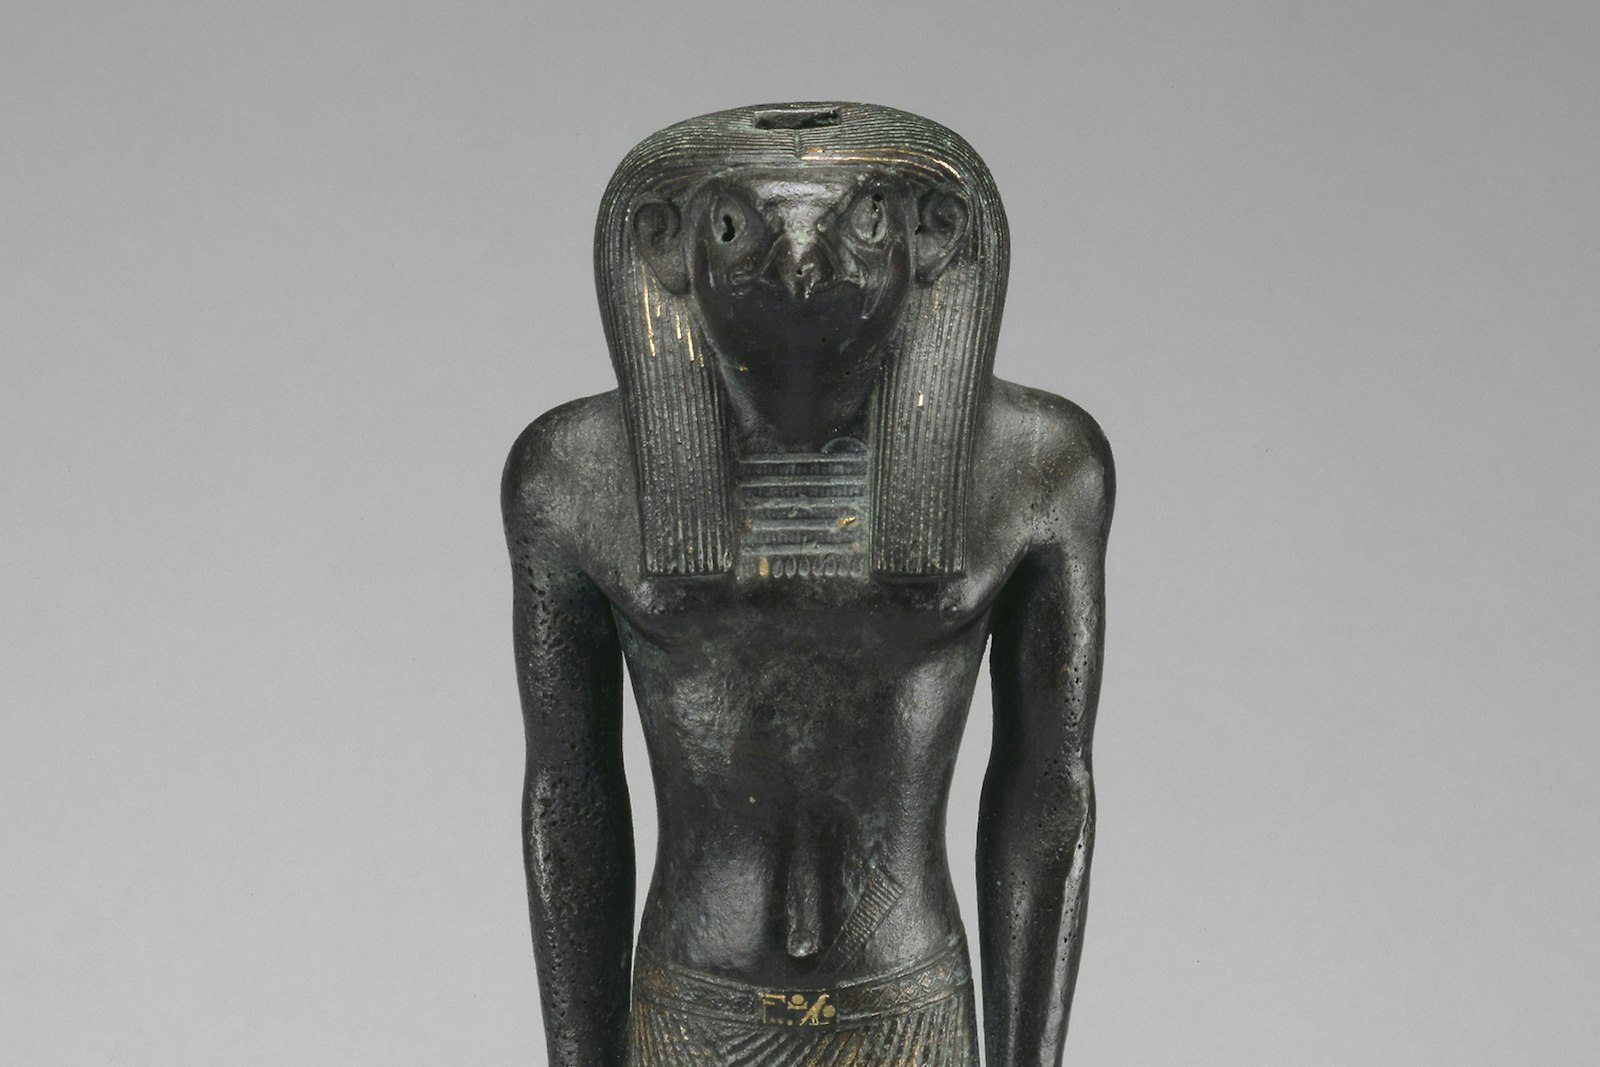 Ra, Egyptian God of the Sun (3:2)